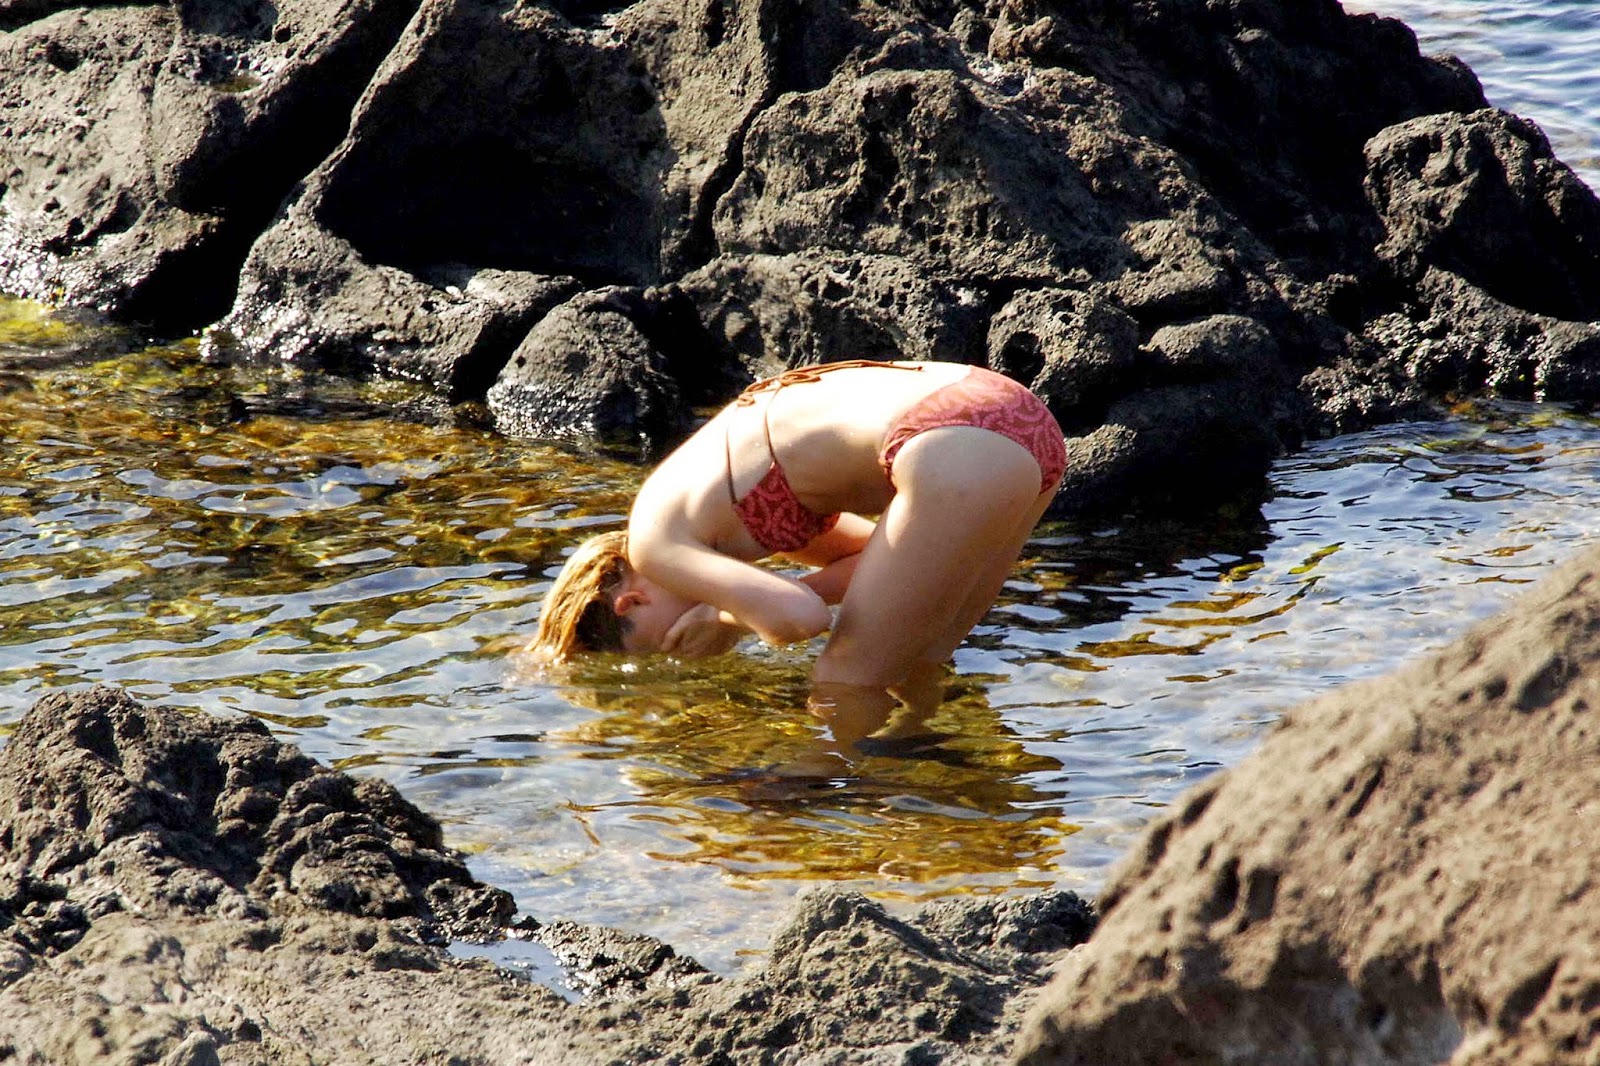 Best Dakota Johnson Naked Images On Pinterest Dakota Johnson Dakota Fanning And Naked 3